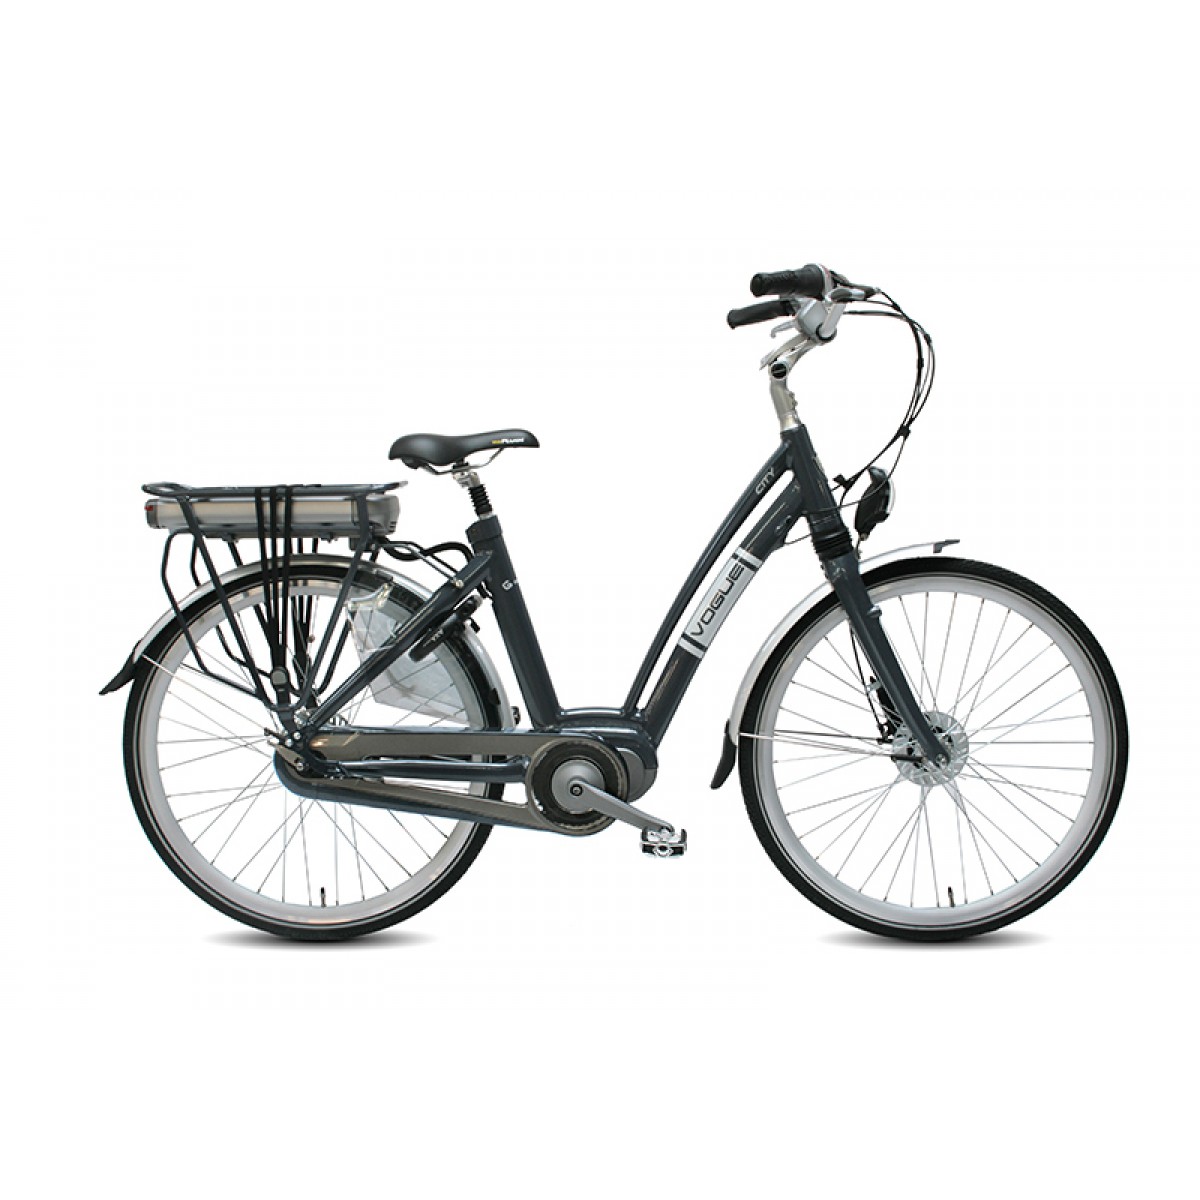 Blootstellen zuur bord VOGUE Elektrische fiets CITY 28inch Ebikes matt-Grey NX8 Lady - Nieuwe fiets  kopen? H&H Dutch Bikes!